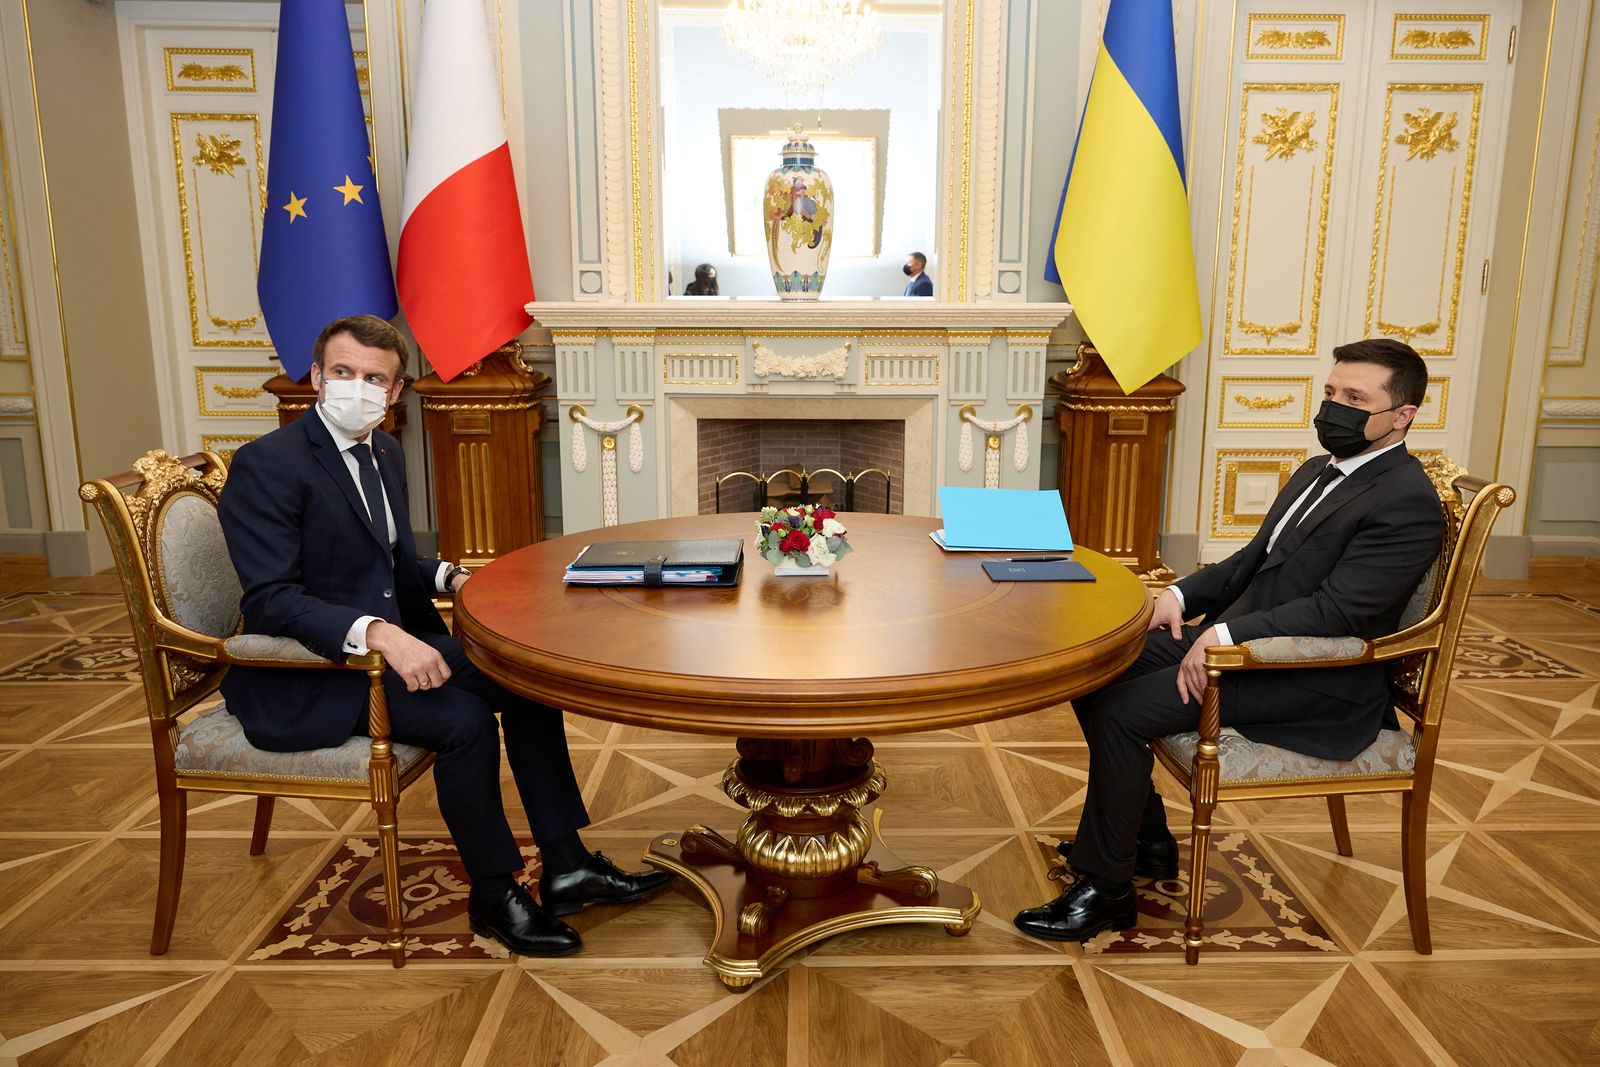 الرئيس الأوكراني فولوديمير زيلينسكي يحضر اجتماعًا مع الرئيس الفرنسي إيمانويل ماكرون في العاصمة الأوكرانية كييف. 8 فبراير 2022 - via REUTERS